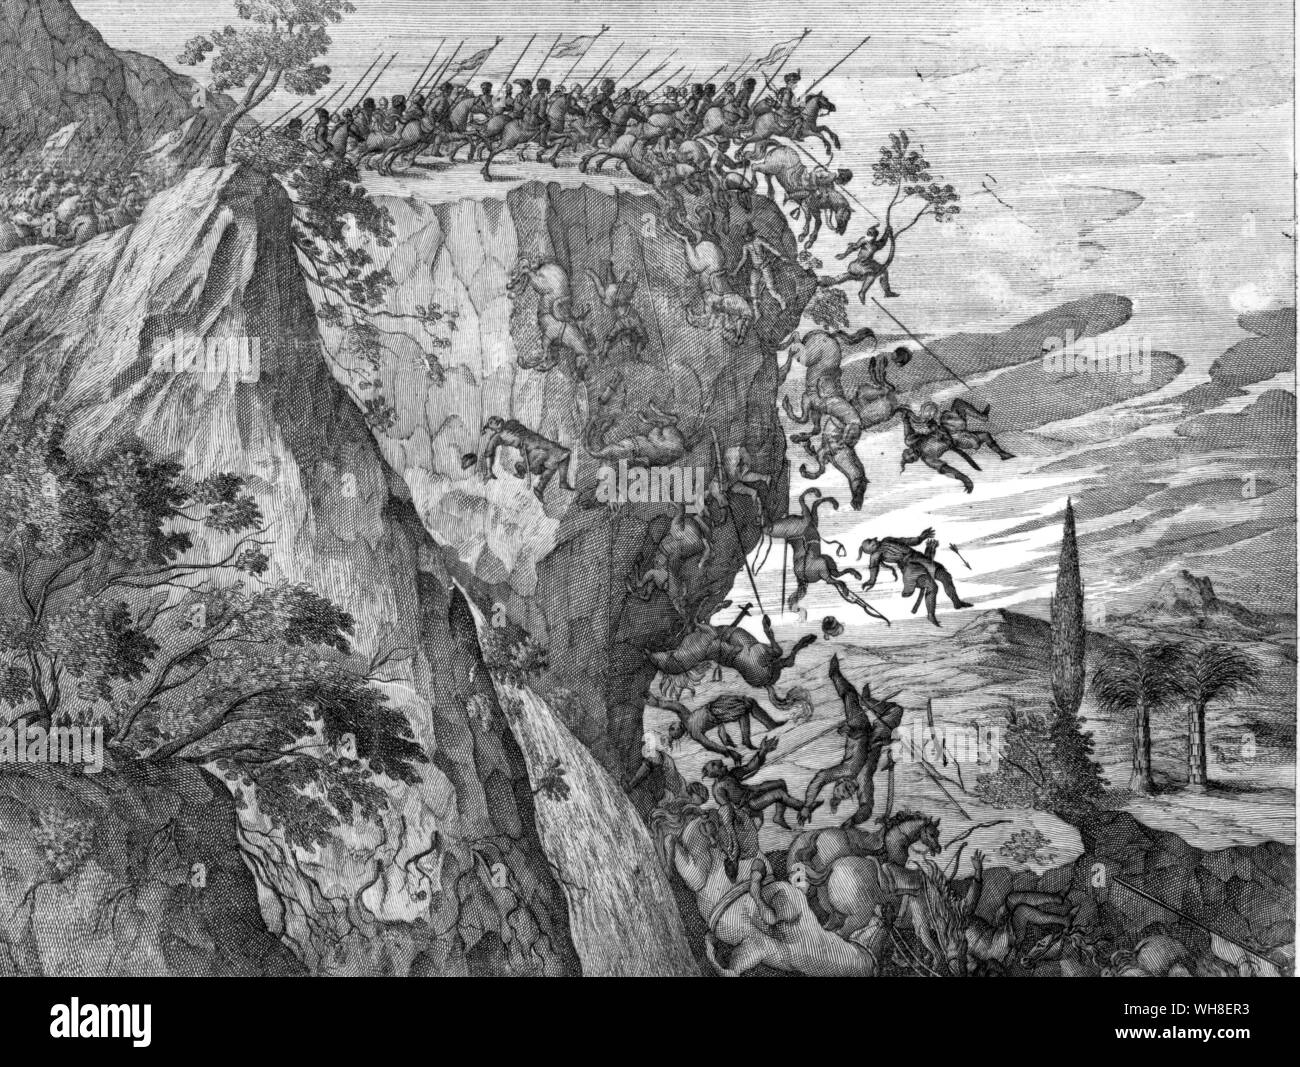 La guerra in Etiopia di montagna - sei cento cavalieri cadendo su una scogliera. Una illustrazione dal XVII secolo la storia di Etiopia. Foto Stock